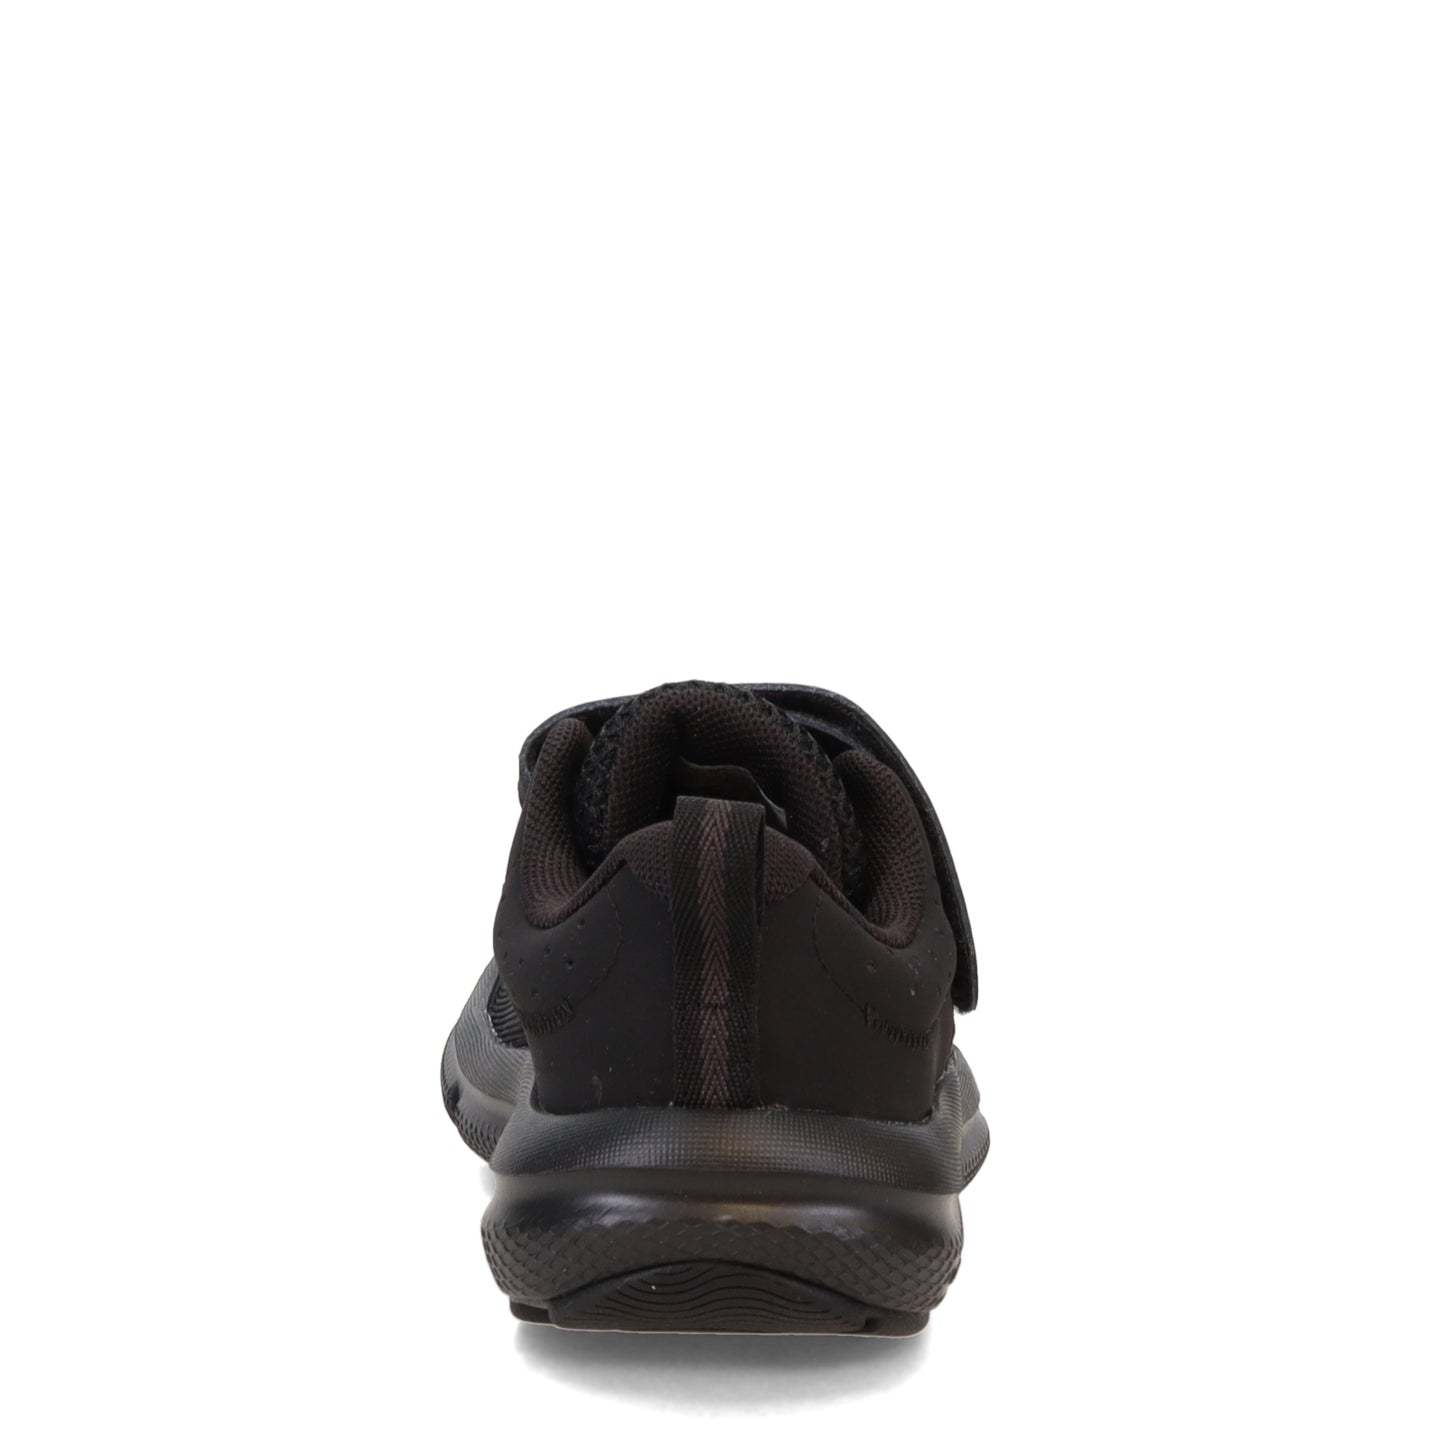 Peltz Shoes  Boy's Under Armour Assert 10 AC Running Shoe - Little Kid AC Black/Black 3026183-002